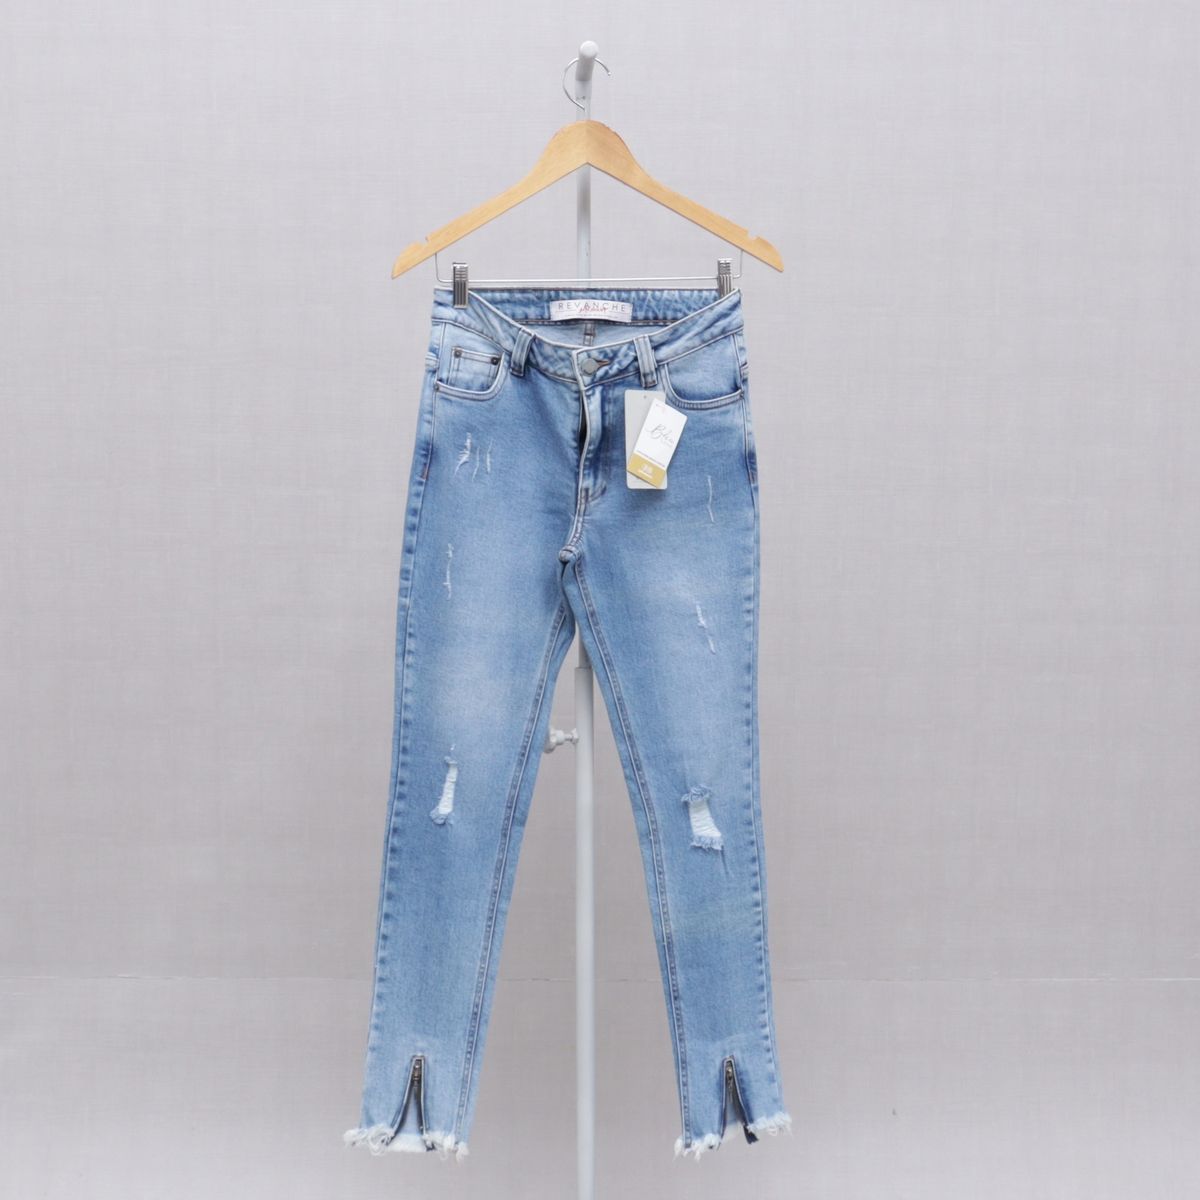 Calça jeans com zíper na perna 56576 - Calça jeans com zíper na perna 56576  - RHERO